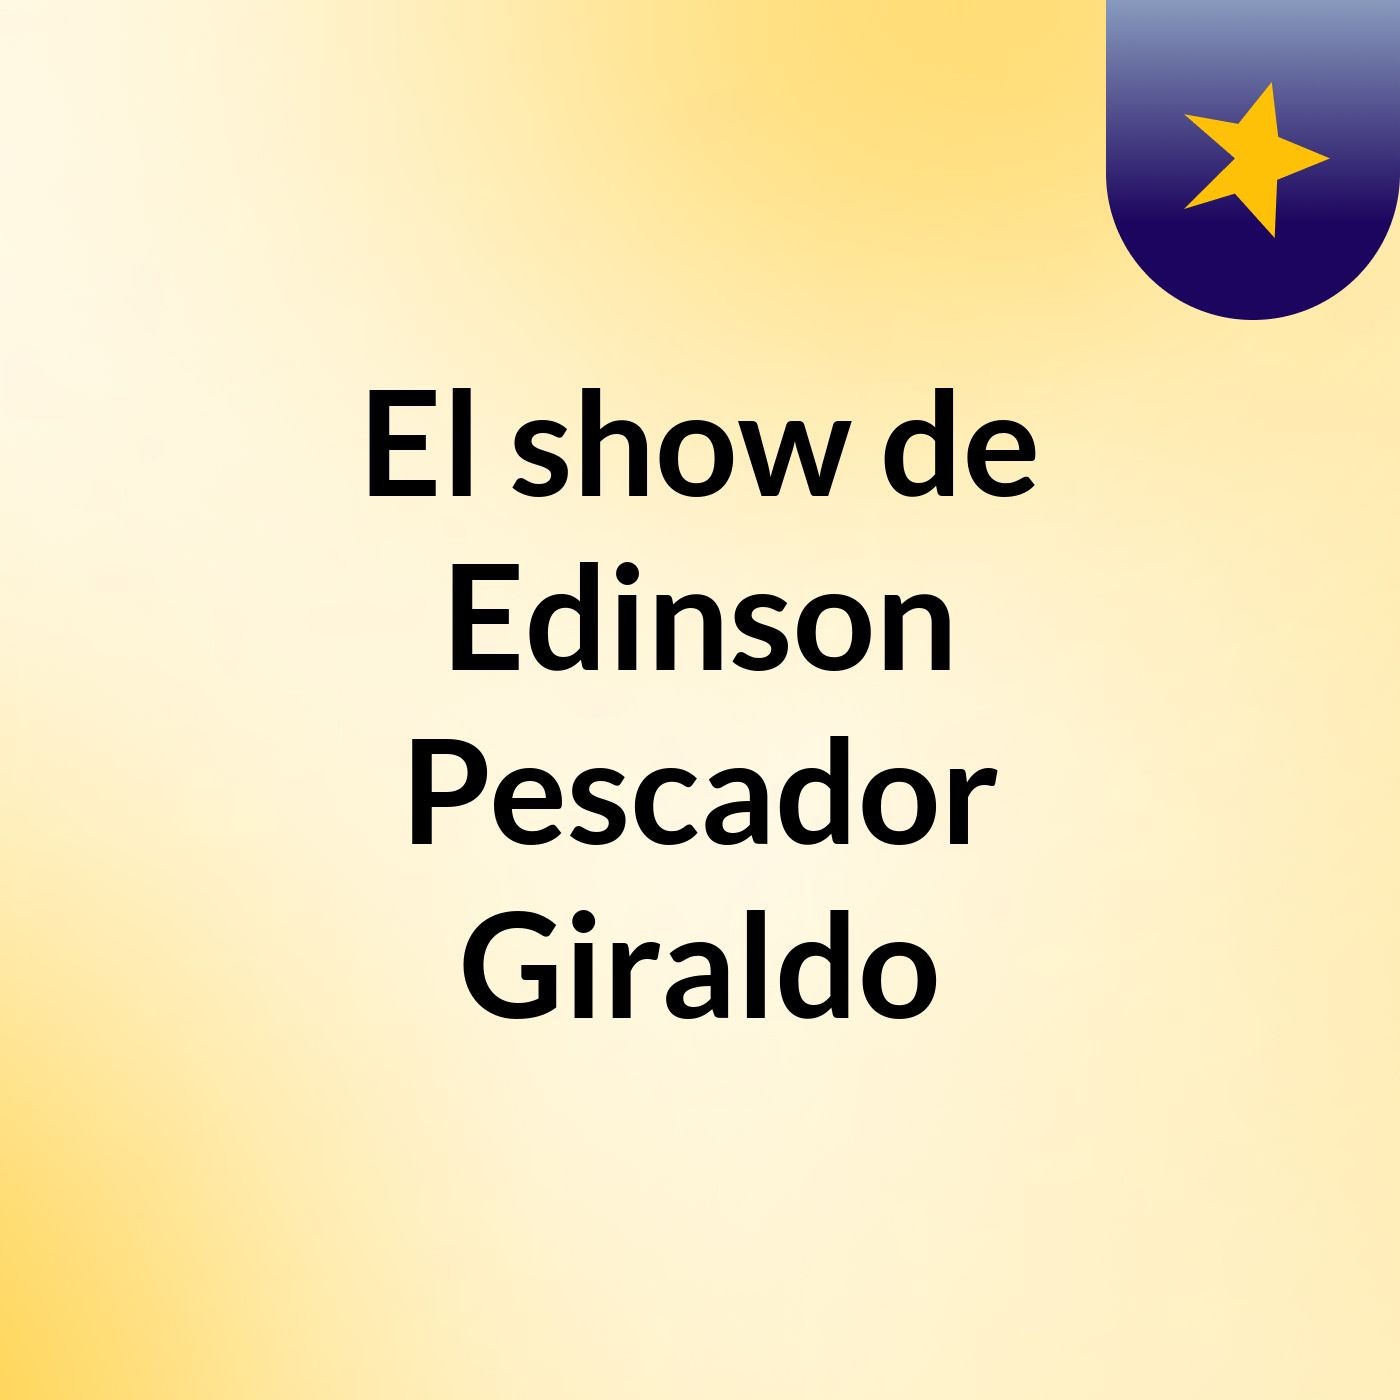 El show de Edinson Pescador Giraldo